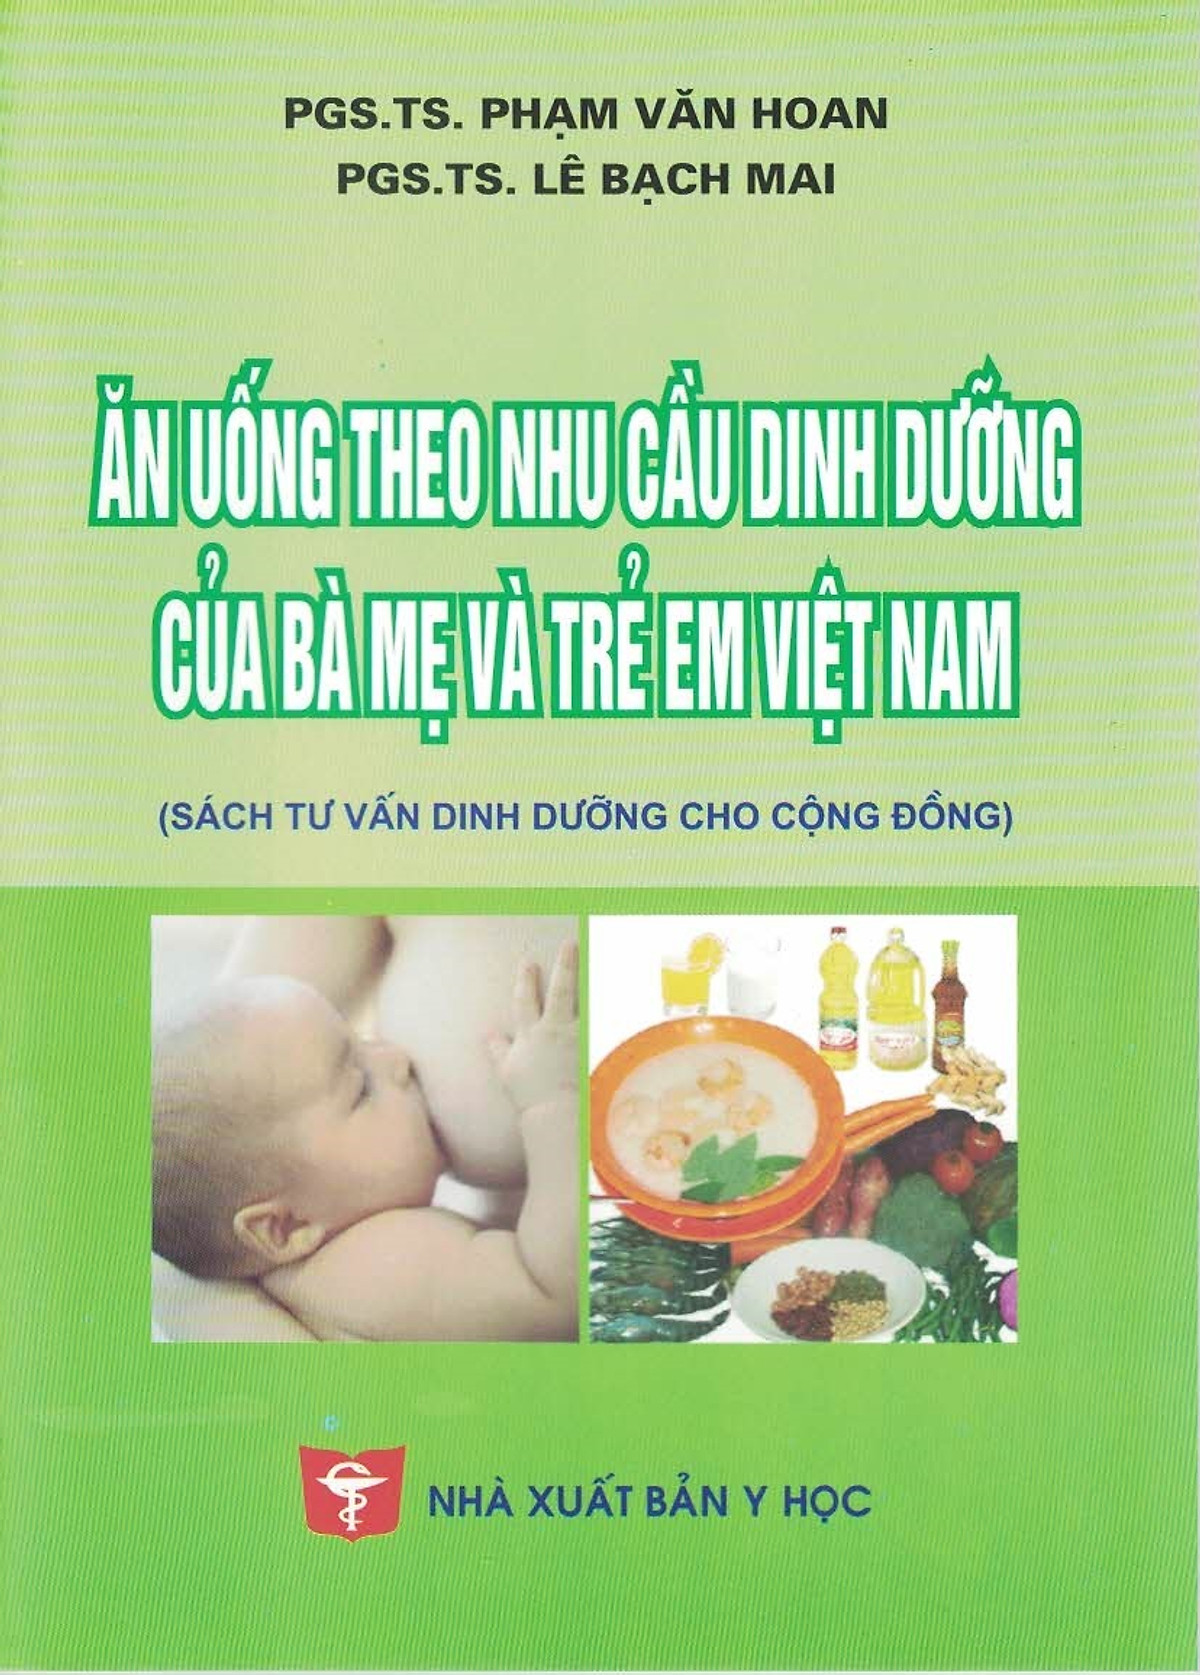 Ăn Uống Theo Nhu Cầu Dinh Dưỡng Của Bà Mẹ Và Trẻ Em Việt Nam (Sách tư vấn dinh dưỡng cho cộng đồng)